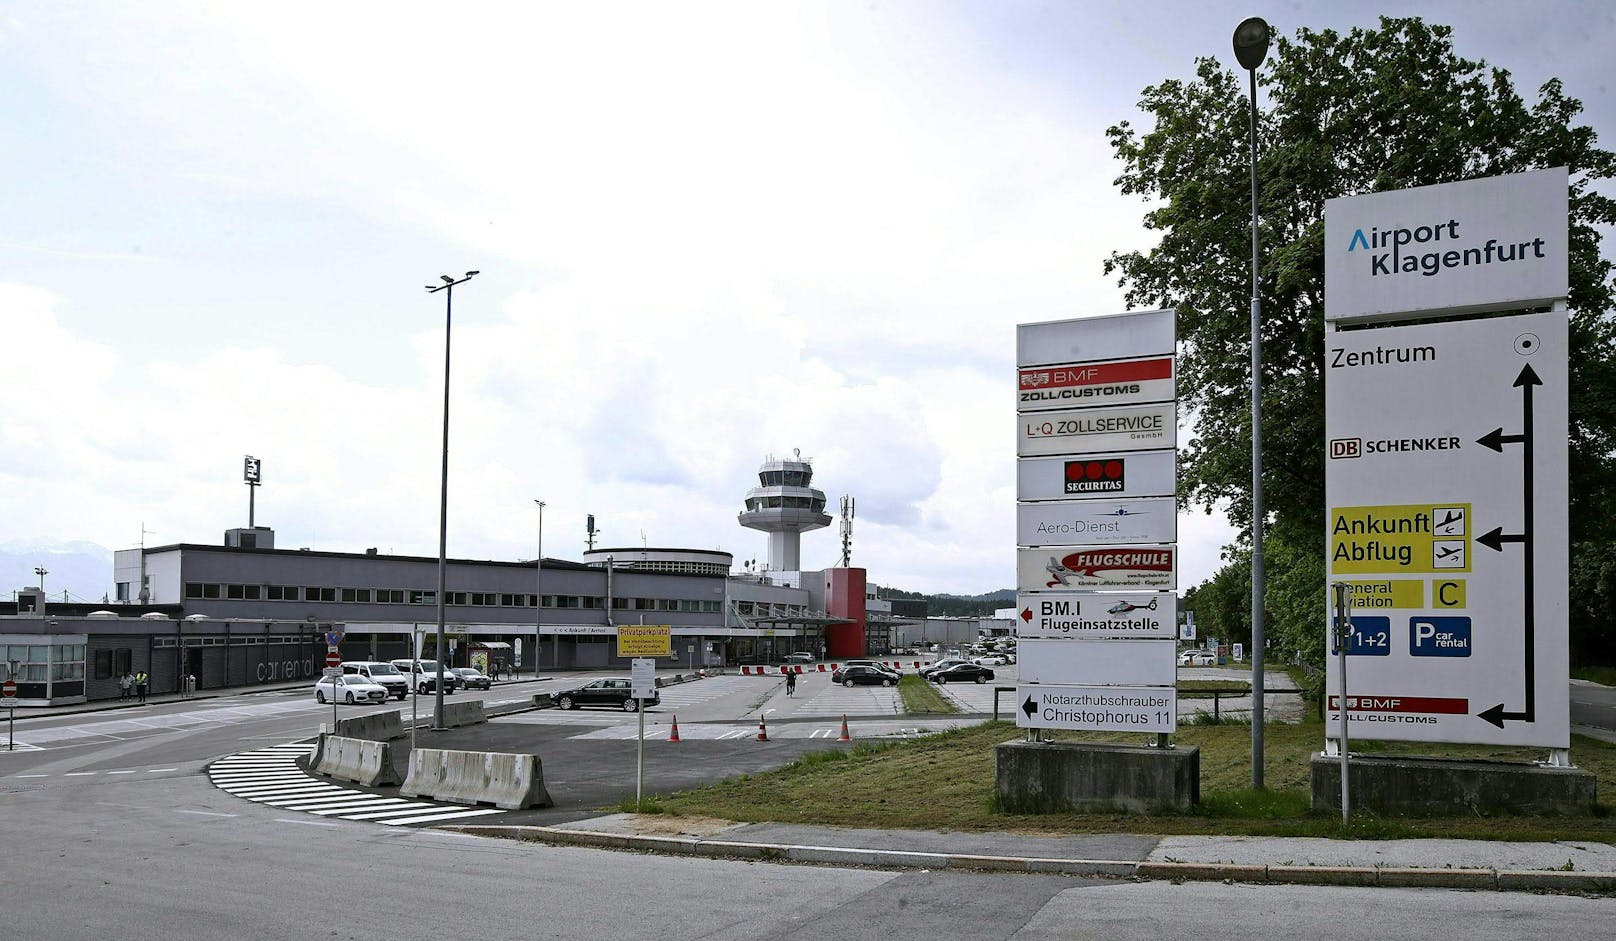 Der junge Mann wurde am Flughafen Klagenfurt von der Polizei abgeführt.